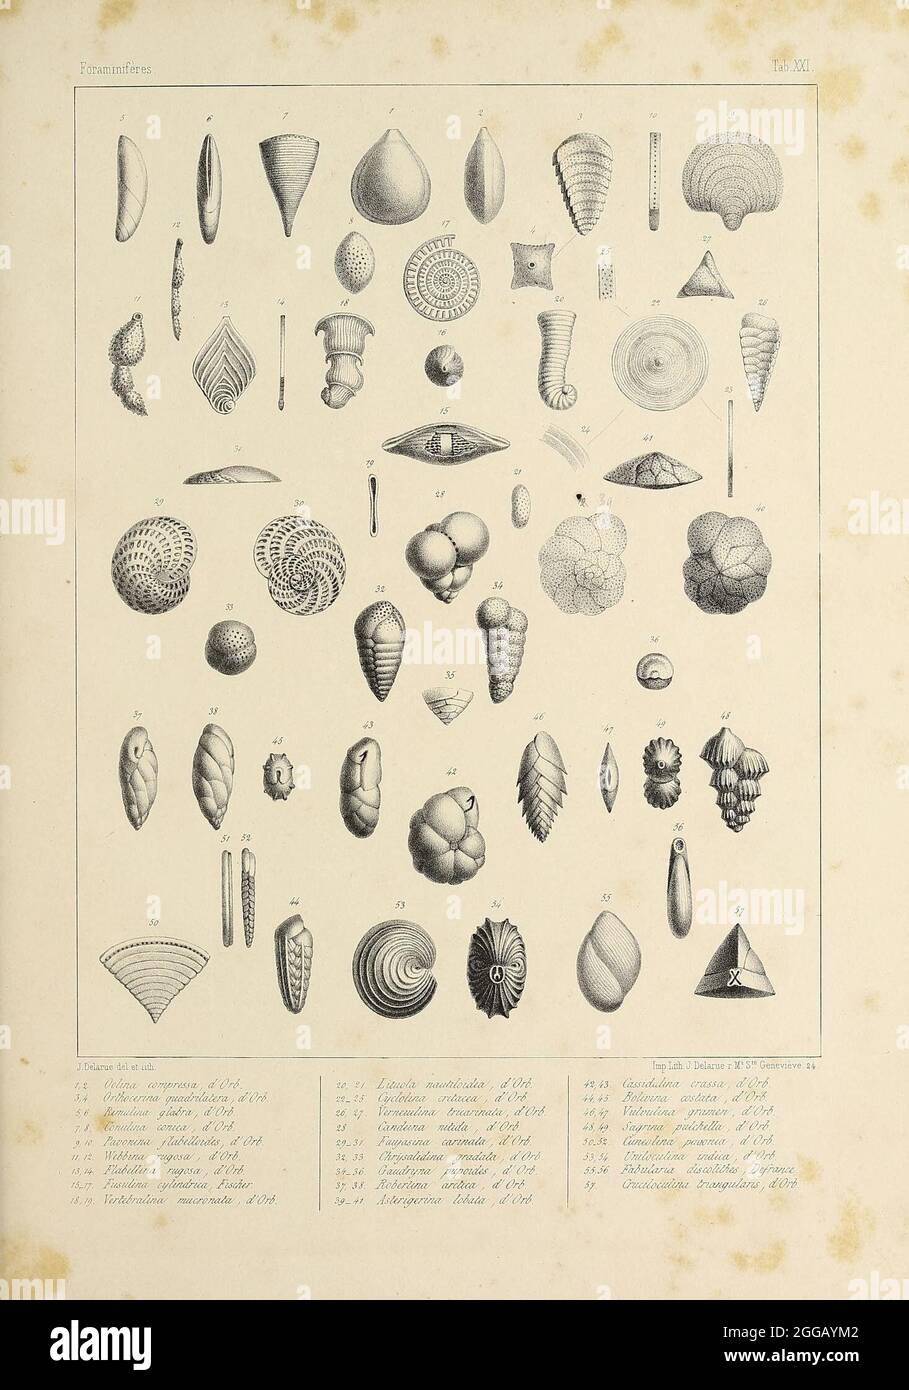 Foraminifères fossiles du bassin tertiaire de Vienne (Autriche) : Paris  :Gide et Compe,1846. https://biodiversitylibrary.org/page/55384606 Stock  Photo - Alamy